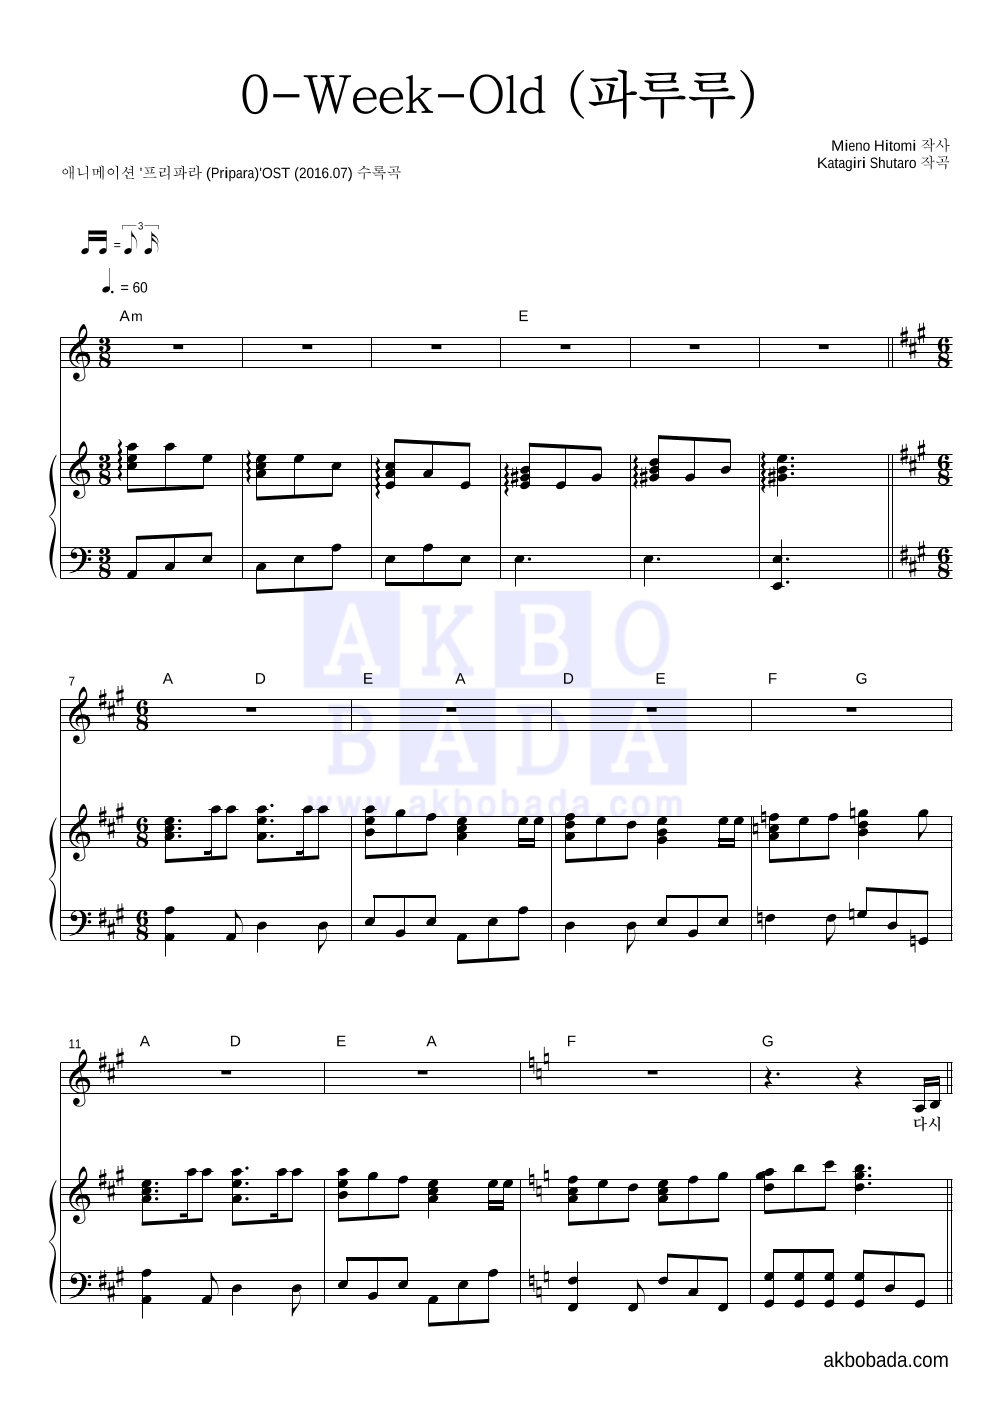 프리파라 OST - 0-Week-Old (파루루) 피아노 3단 악보 